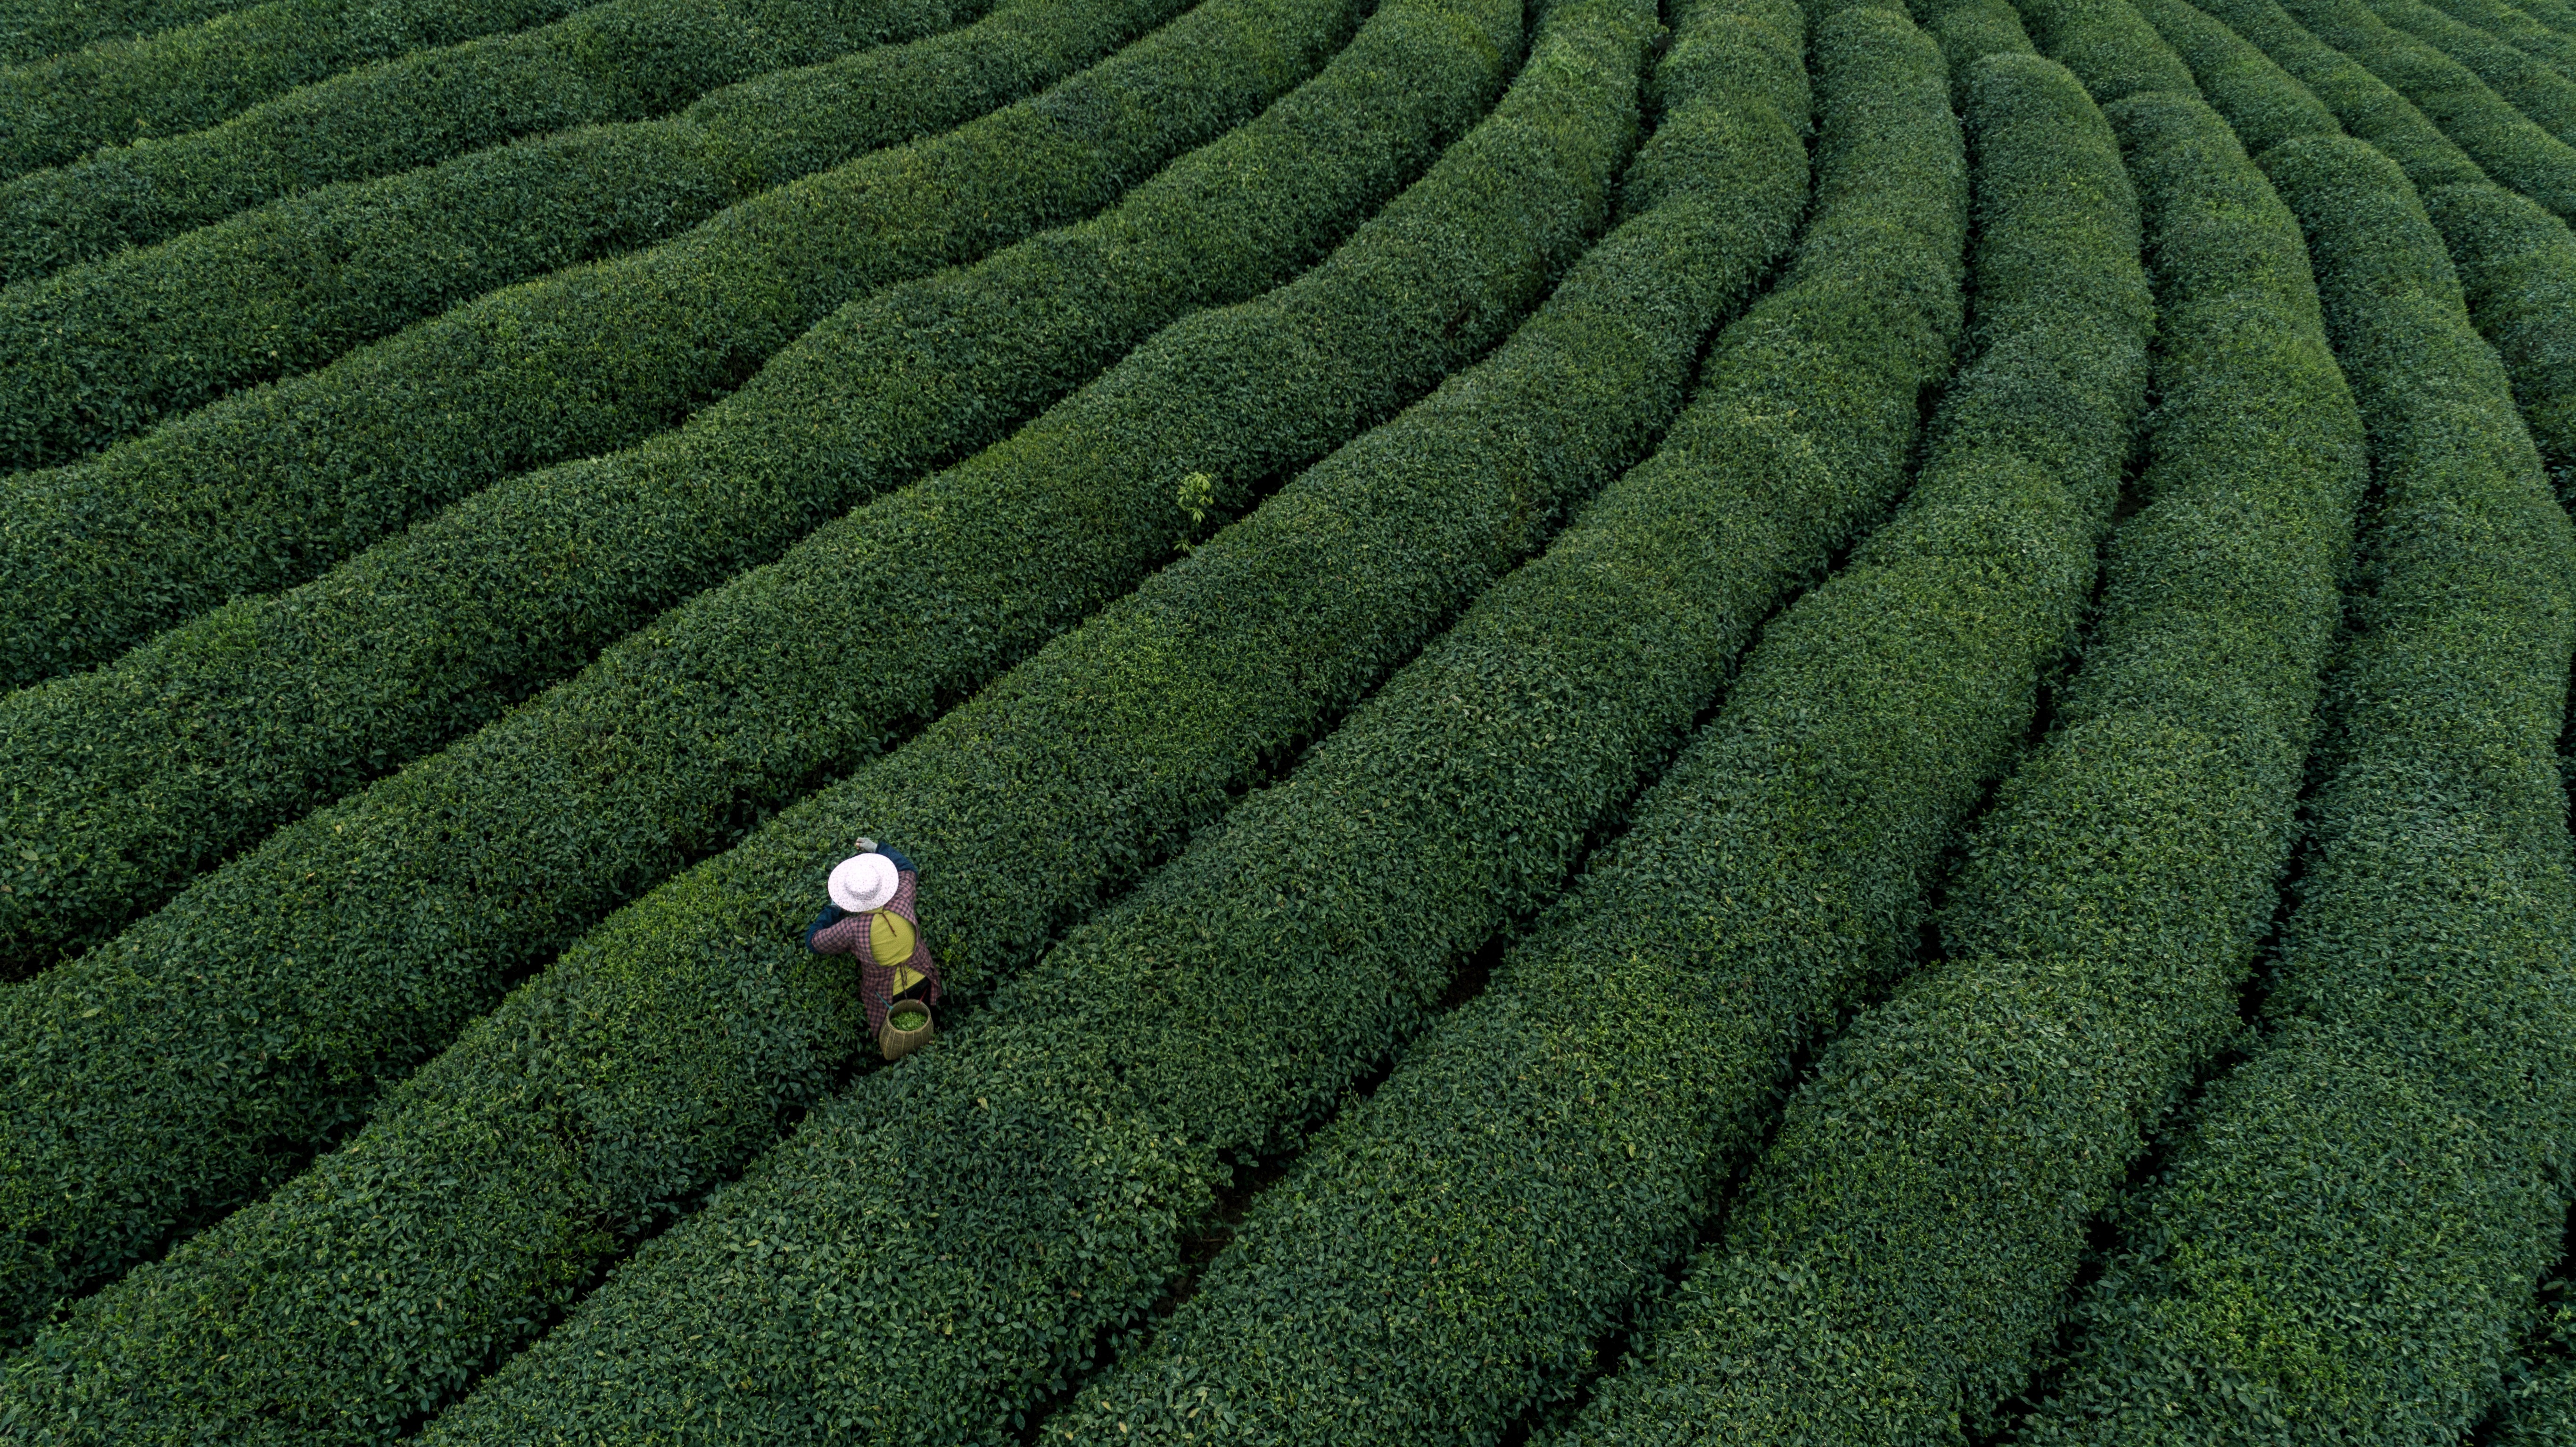 西海岸新区海青茶文化节成功举办 茶旅影响力进一步扩大